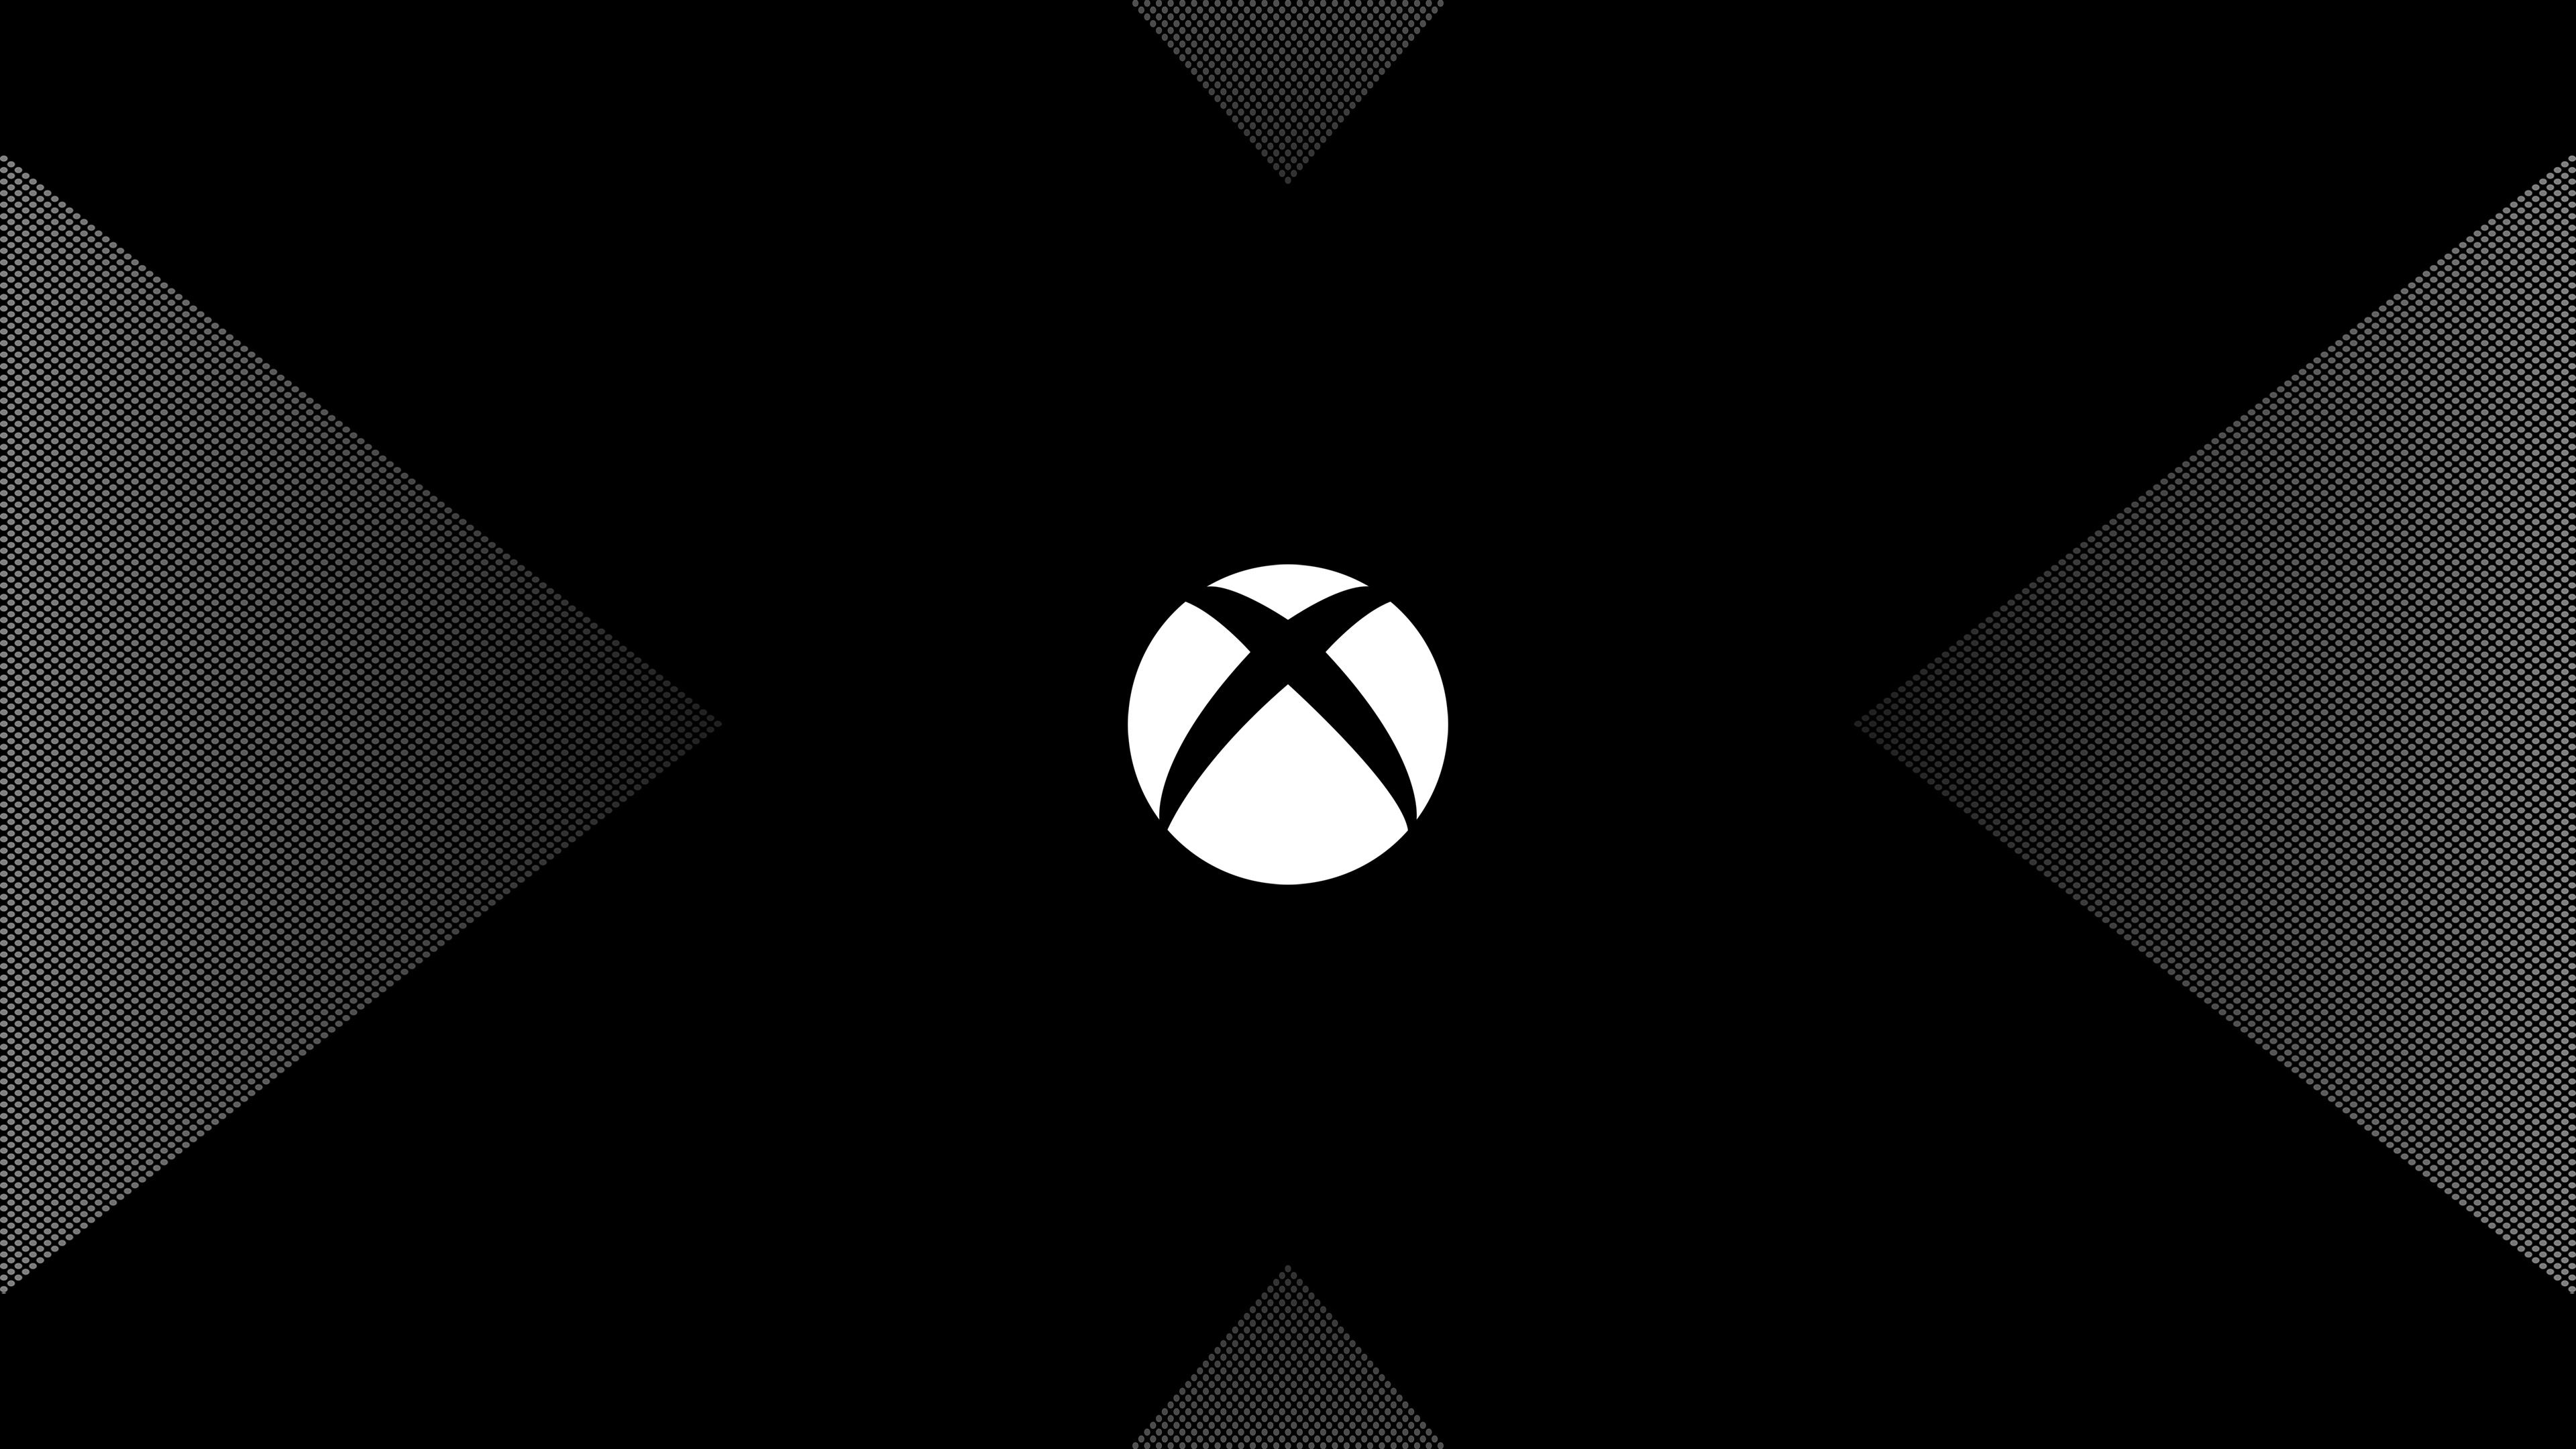 WallpaperDog là ứng dụng di động hàng đầu cung cấp hình nền Xbox đẹp mắt nhất. Bạn có thể tìm thấy mọi thứ từ hình nền game cho đến hình nền logo của Xbox. Tải ngay để cập nhật cho chiếc điện thoại của bạn những hình nền độc đáo và không giống ai.